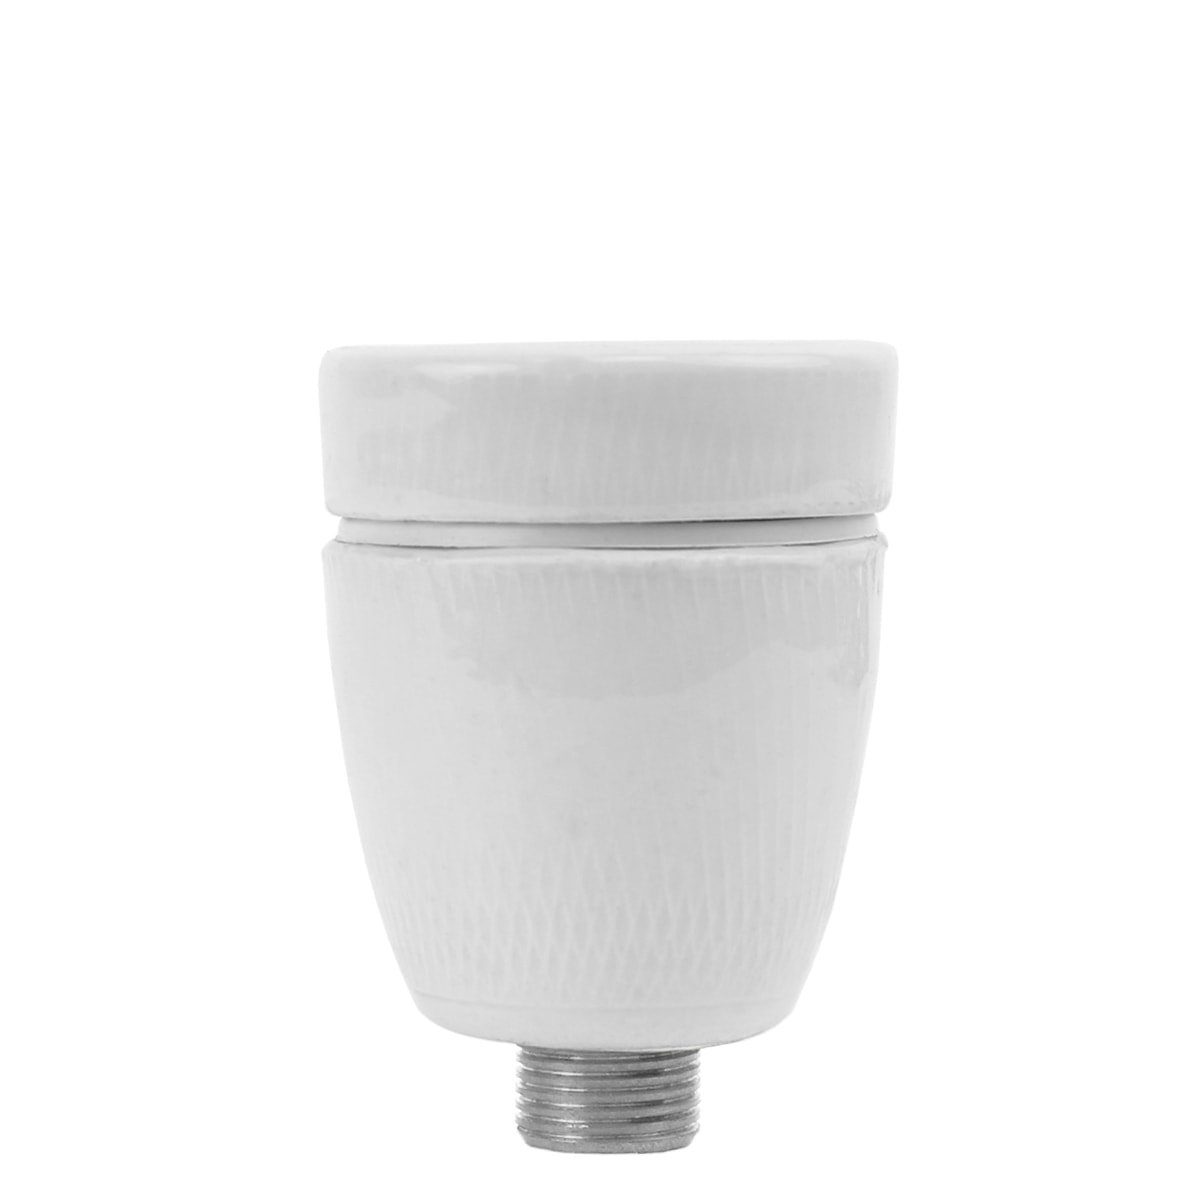 Douille lampe en porcelaine E27 - Ø 10 mm